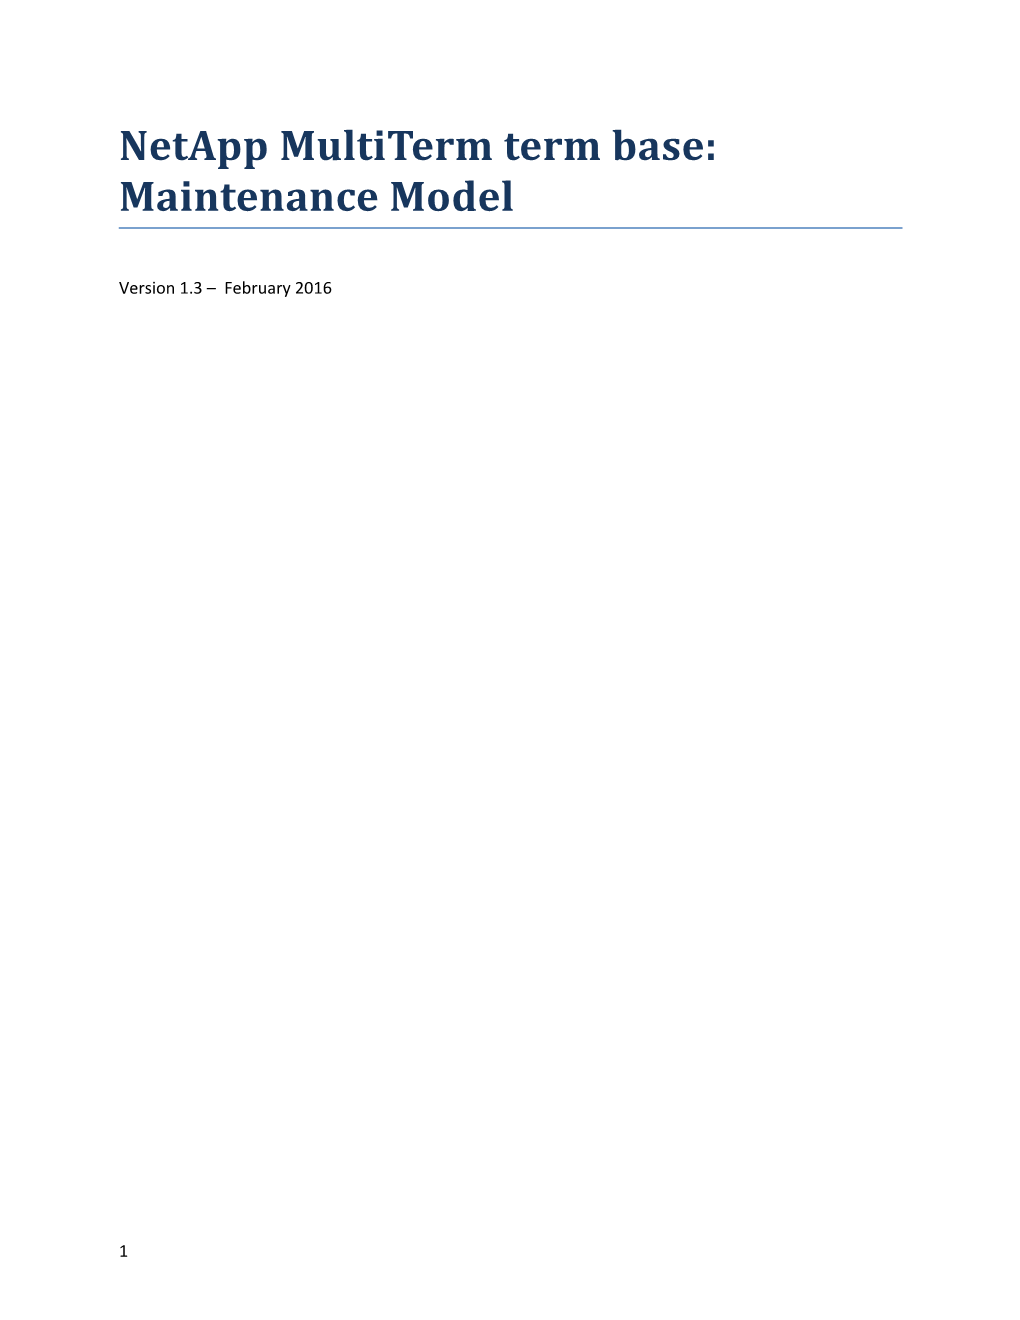 Netapp Multiterm Term Base: Maintenance Model